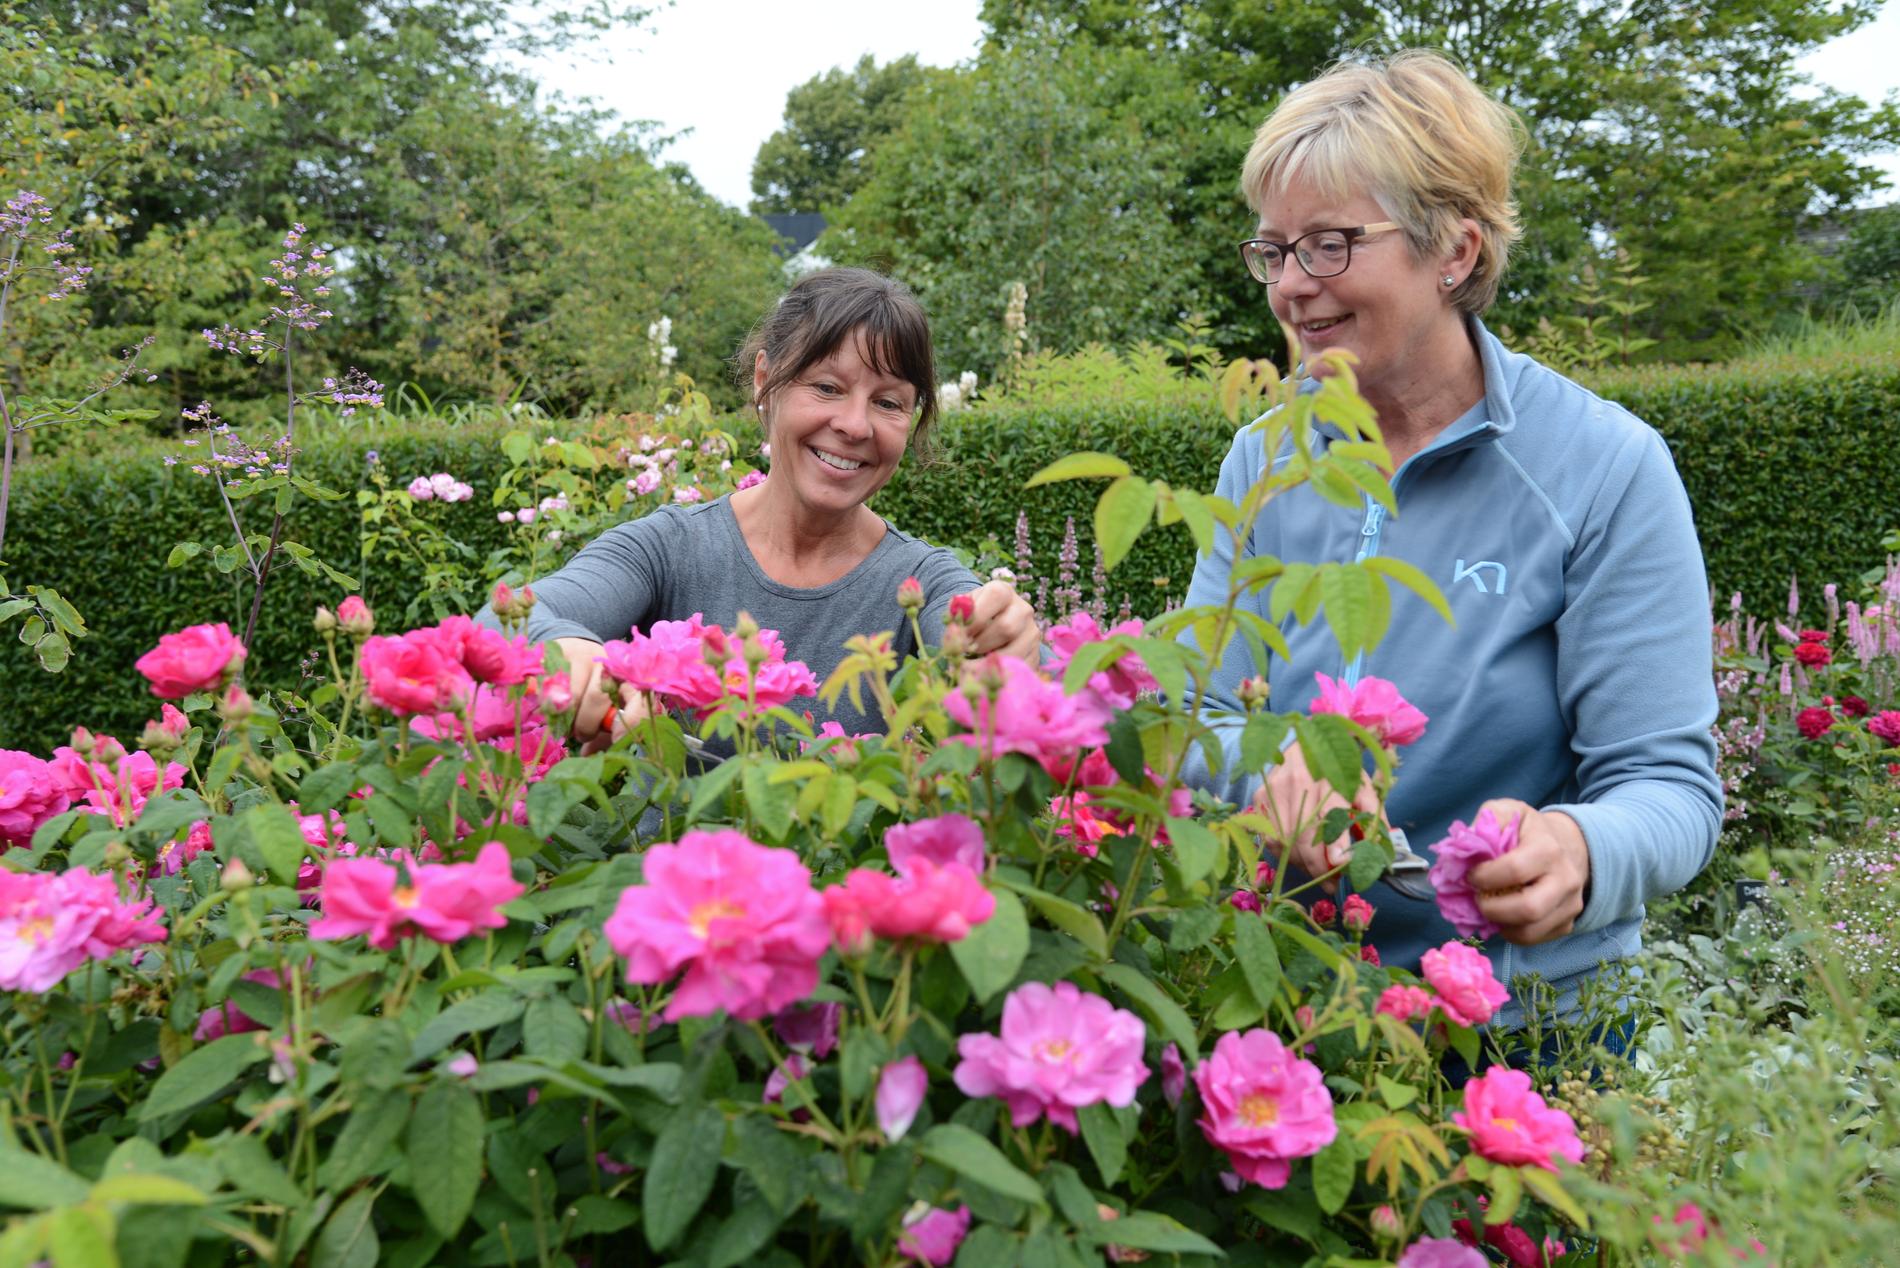 Trädgårdsmästarna Maria Nilsson och Anette Cato driver Den engelska trädgården på Svabesholm i Skåne. Deras visningsträdgård är främst inriktad på de engelska så kallade Austinrosorna, som lockar besökare från stora delar av landet.